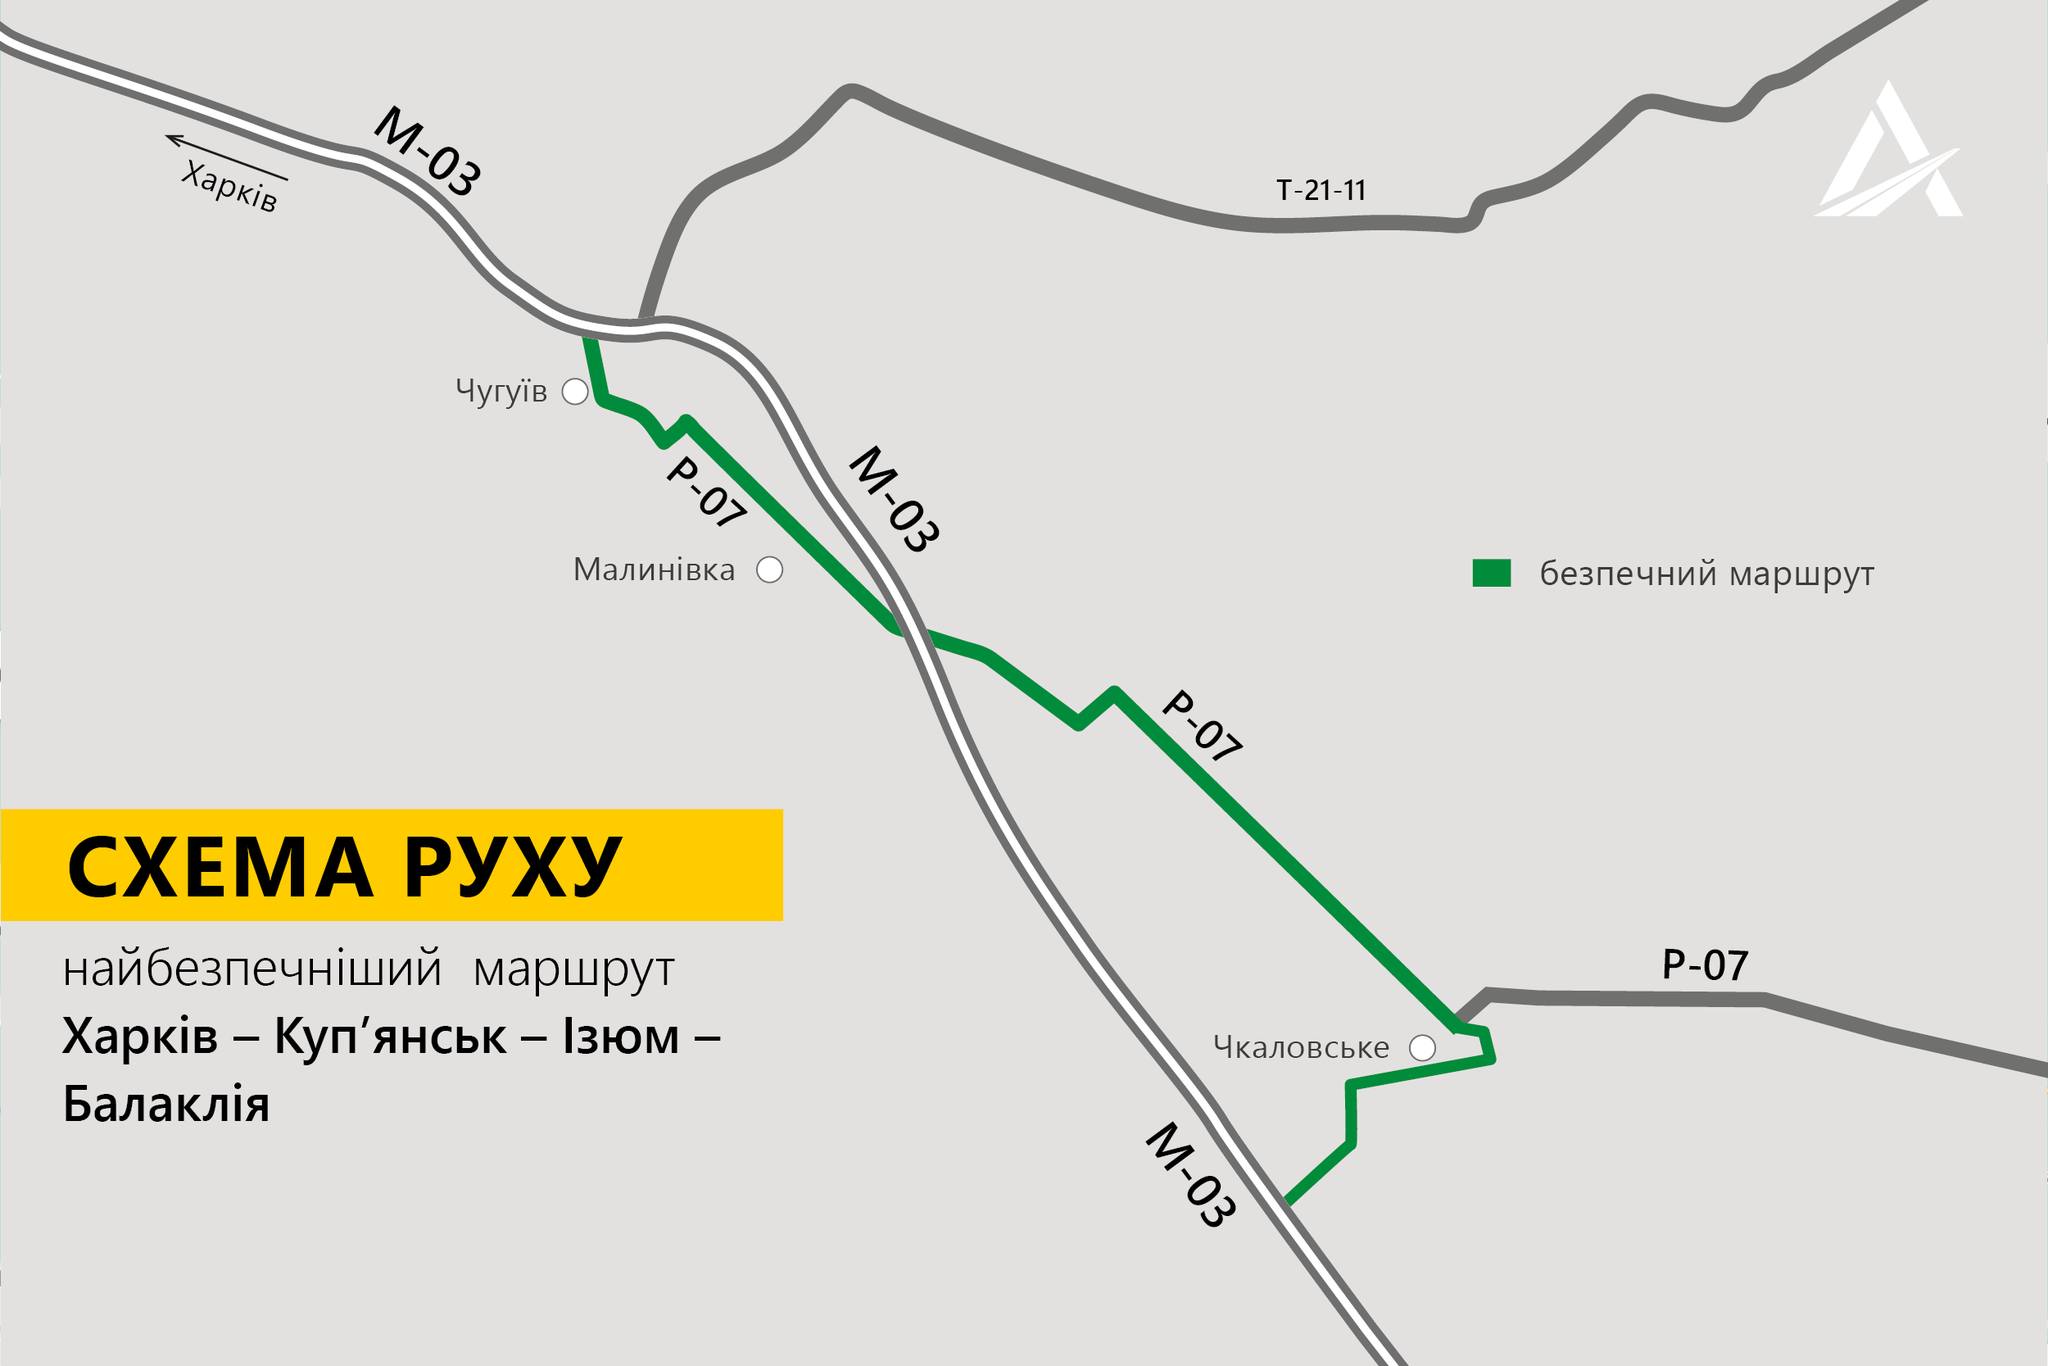 Дорожники сообщили, как безопасно добраться в Балаклею, Изюм и Купянск (схема)